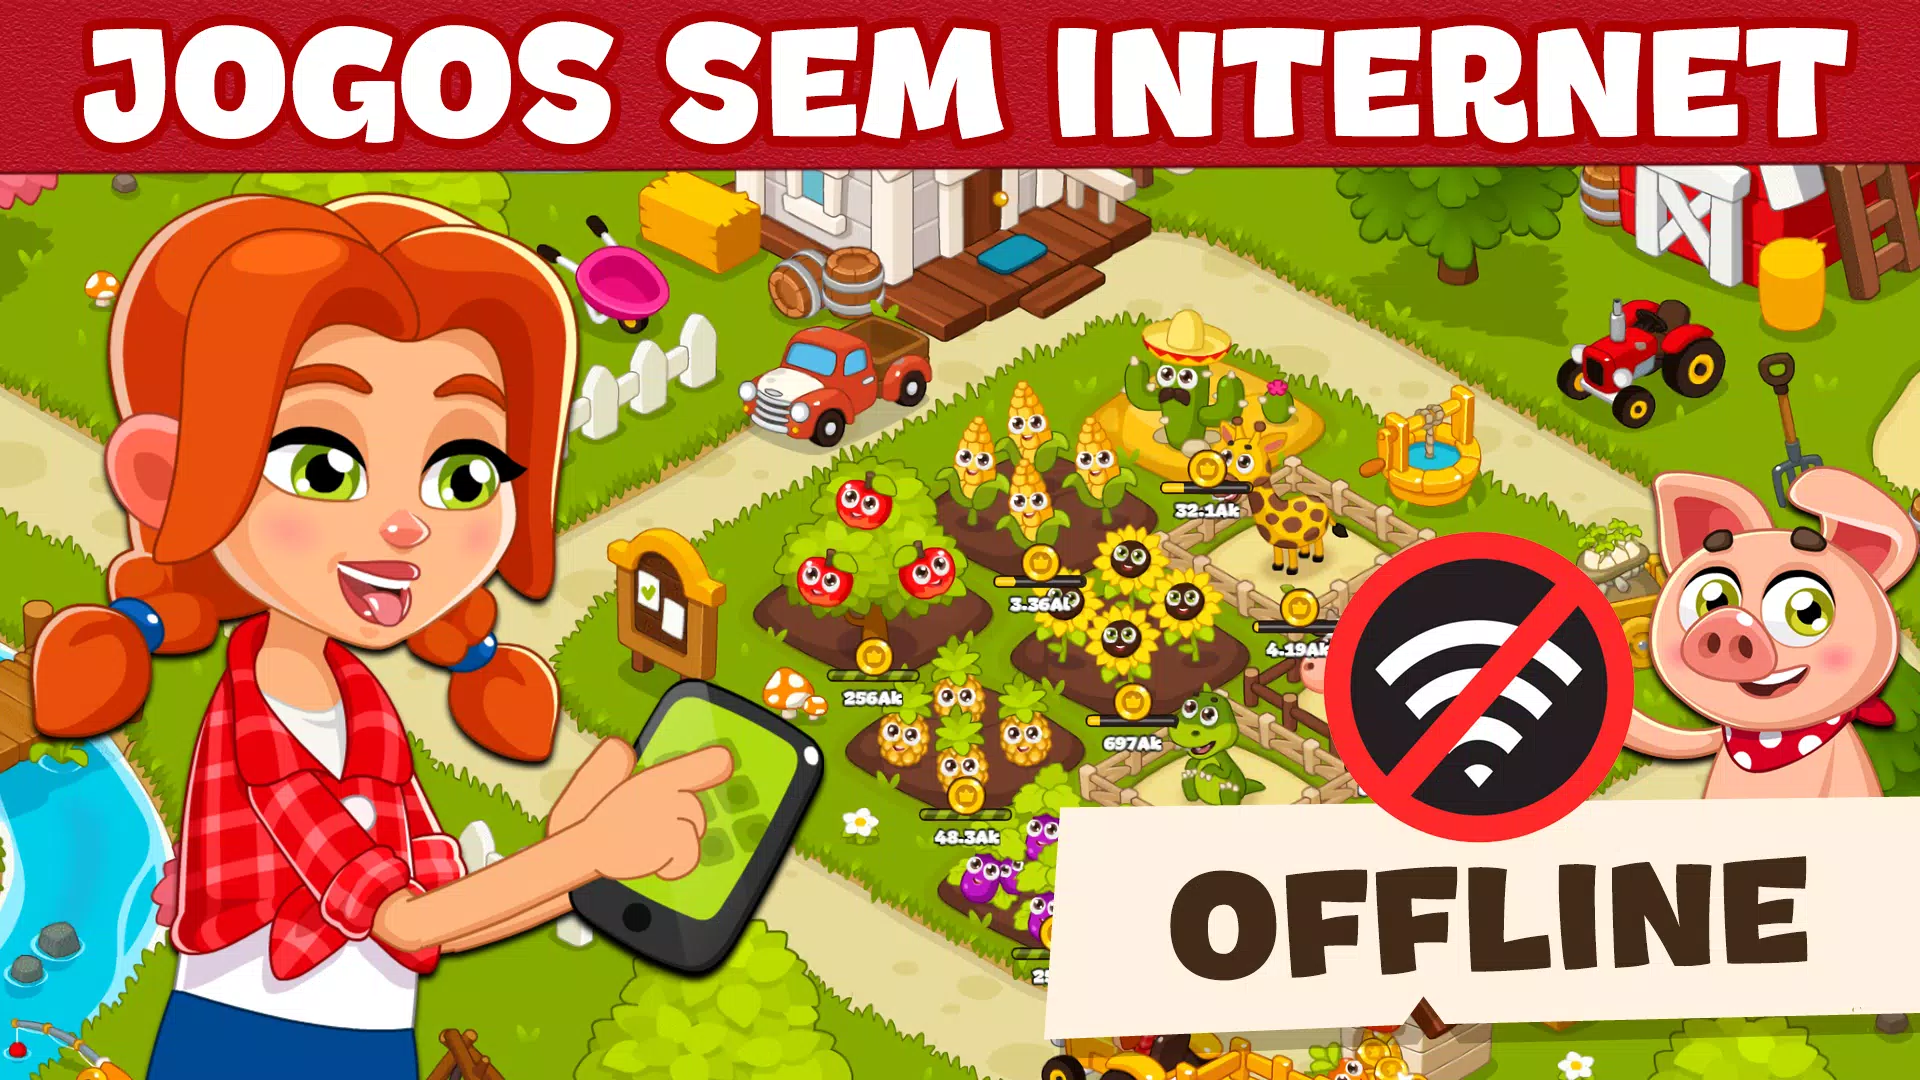 Jogos Offline - Sem Internet APK (Android Game) - Baixar Grátis